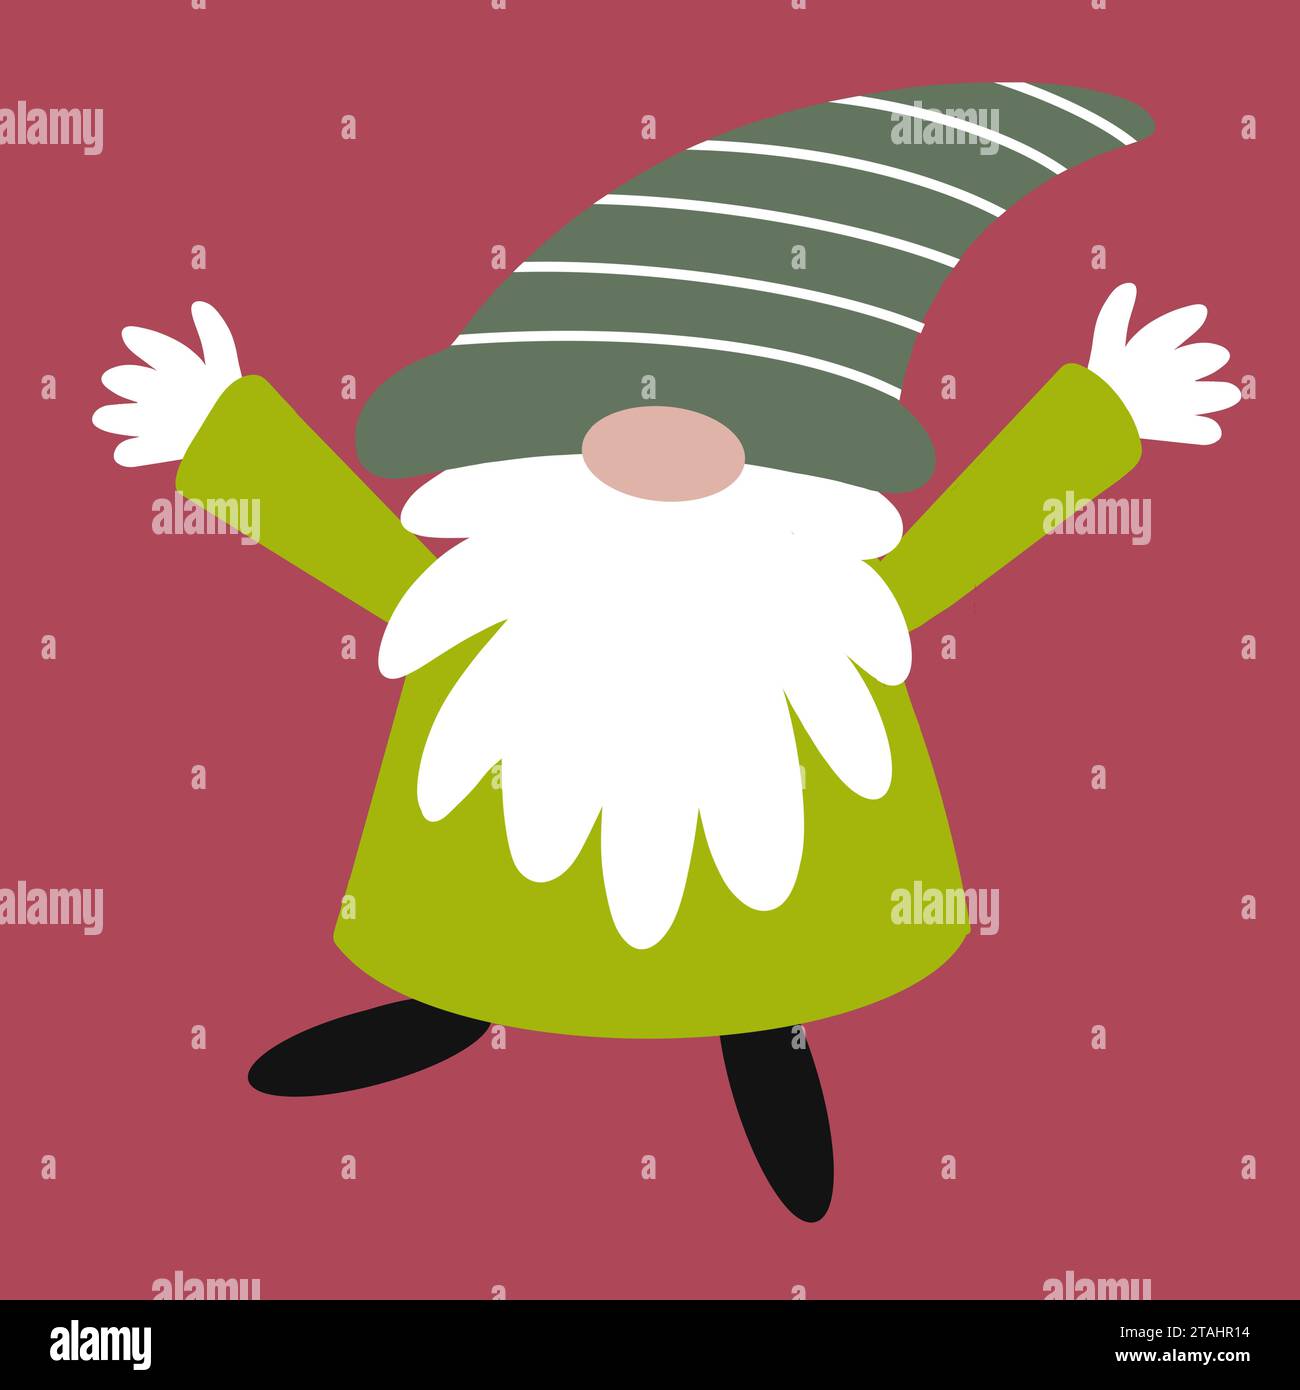 Joyeux Noël gonk illustration. Ce personnage original ressemblant à un gnome arbore une grosse barbe touffue et des couleurs festives de Noël. Une pose vivante et amusante. Banque D'Images